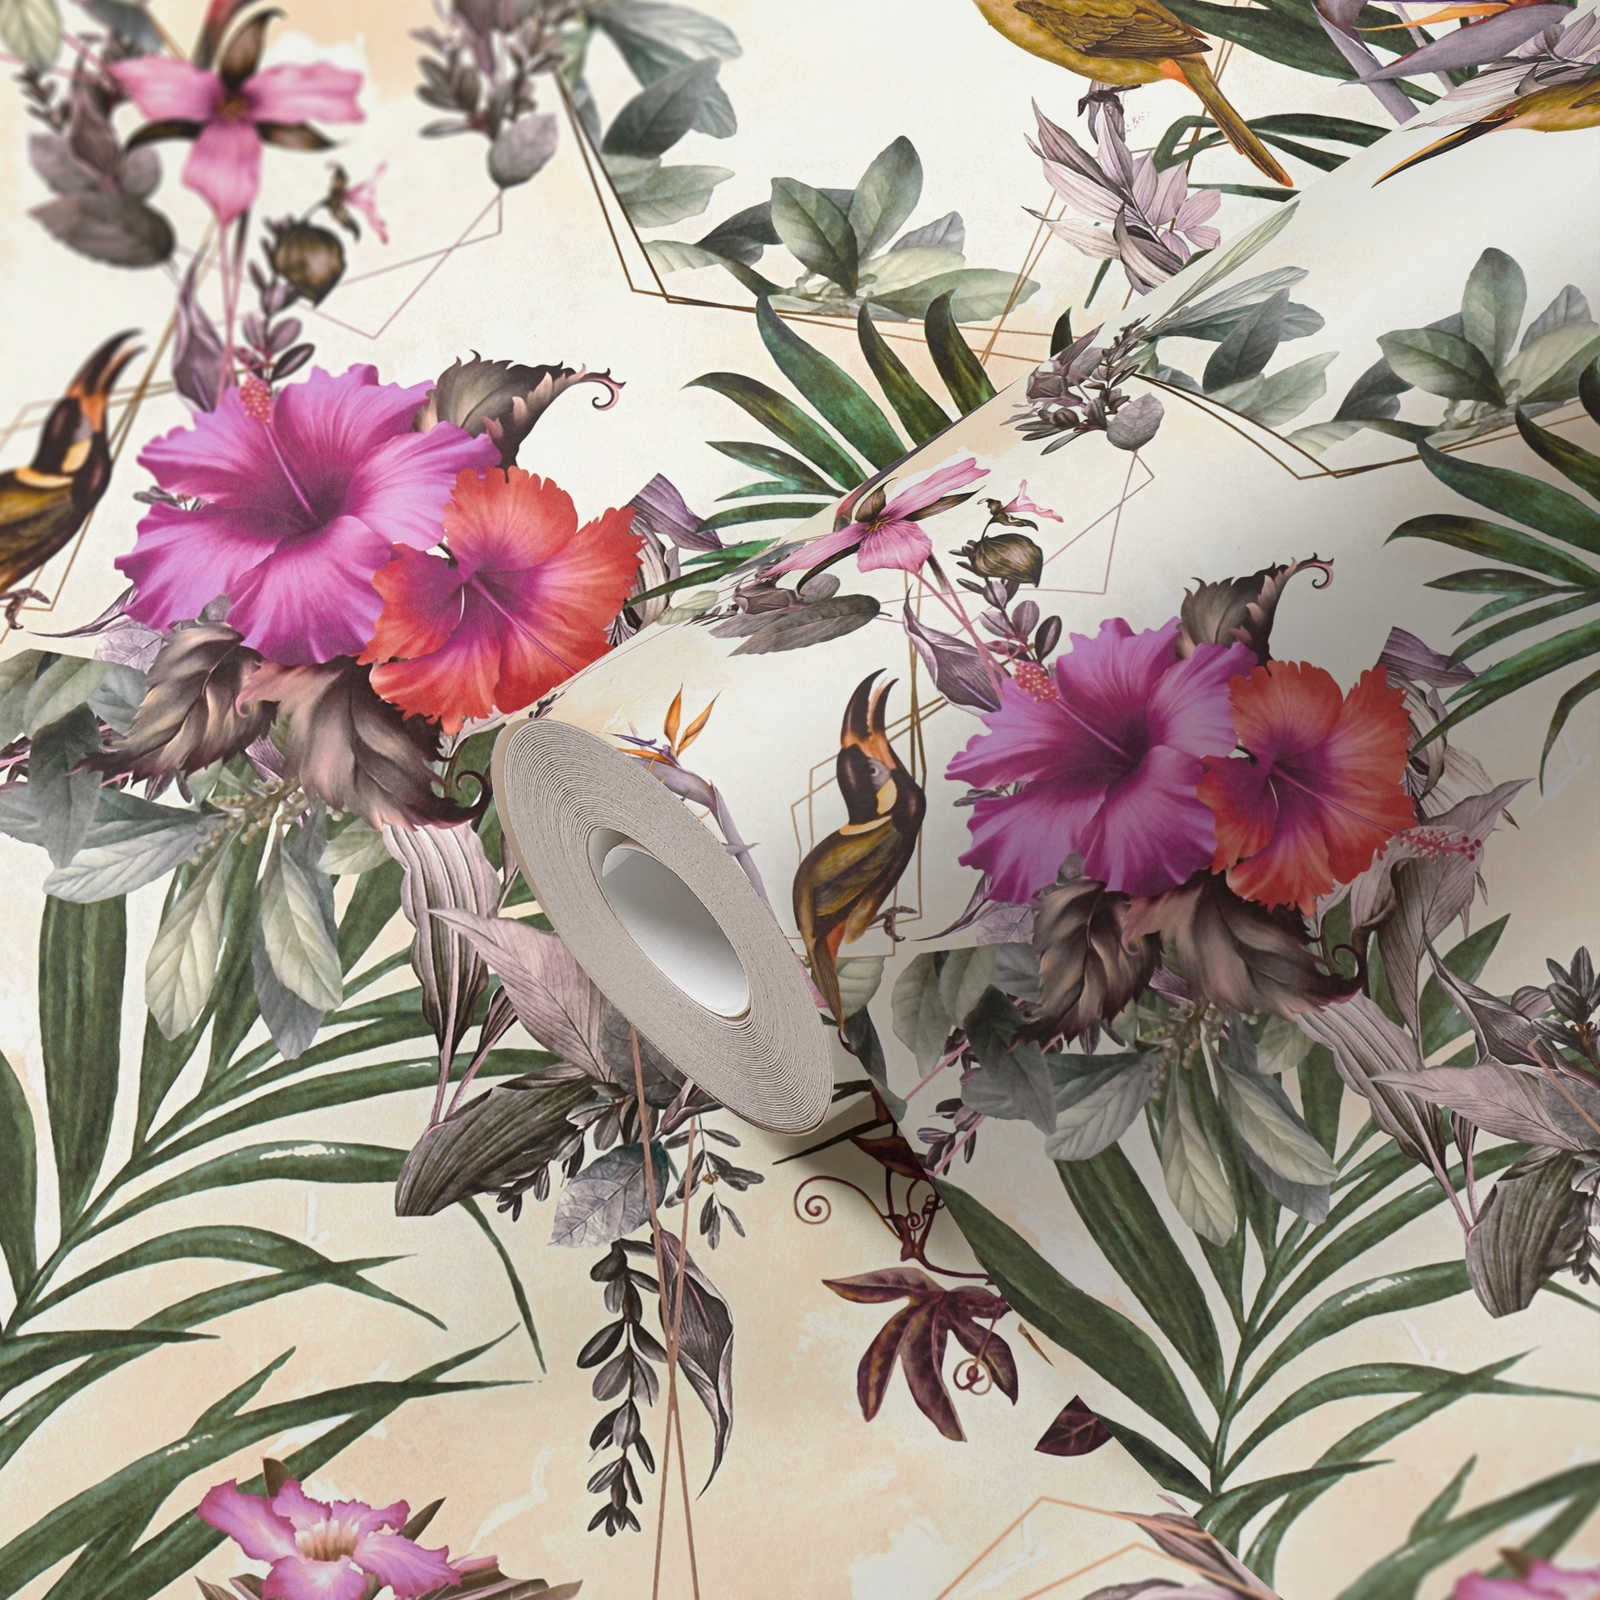             Designtapete Blumen & Vögel im Art Stil – Beige, Grün, Rosa
        